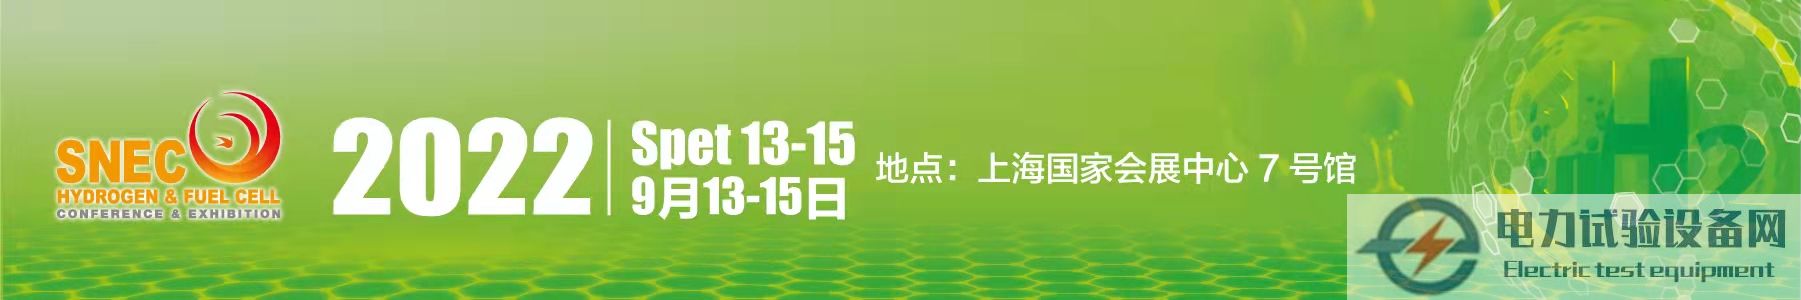 2022国际氢能与燃料电池(上海)技术大会暨展览会